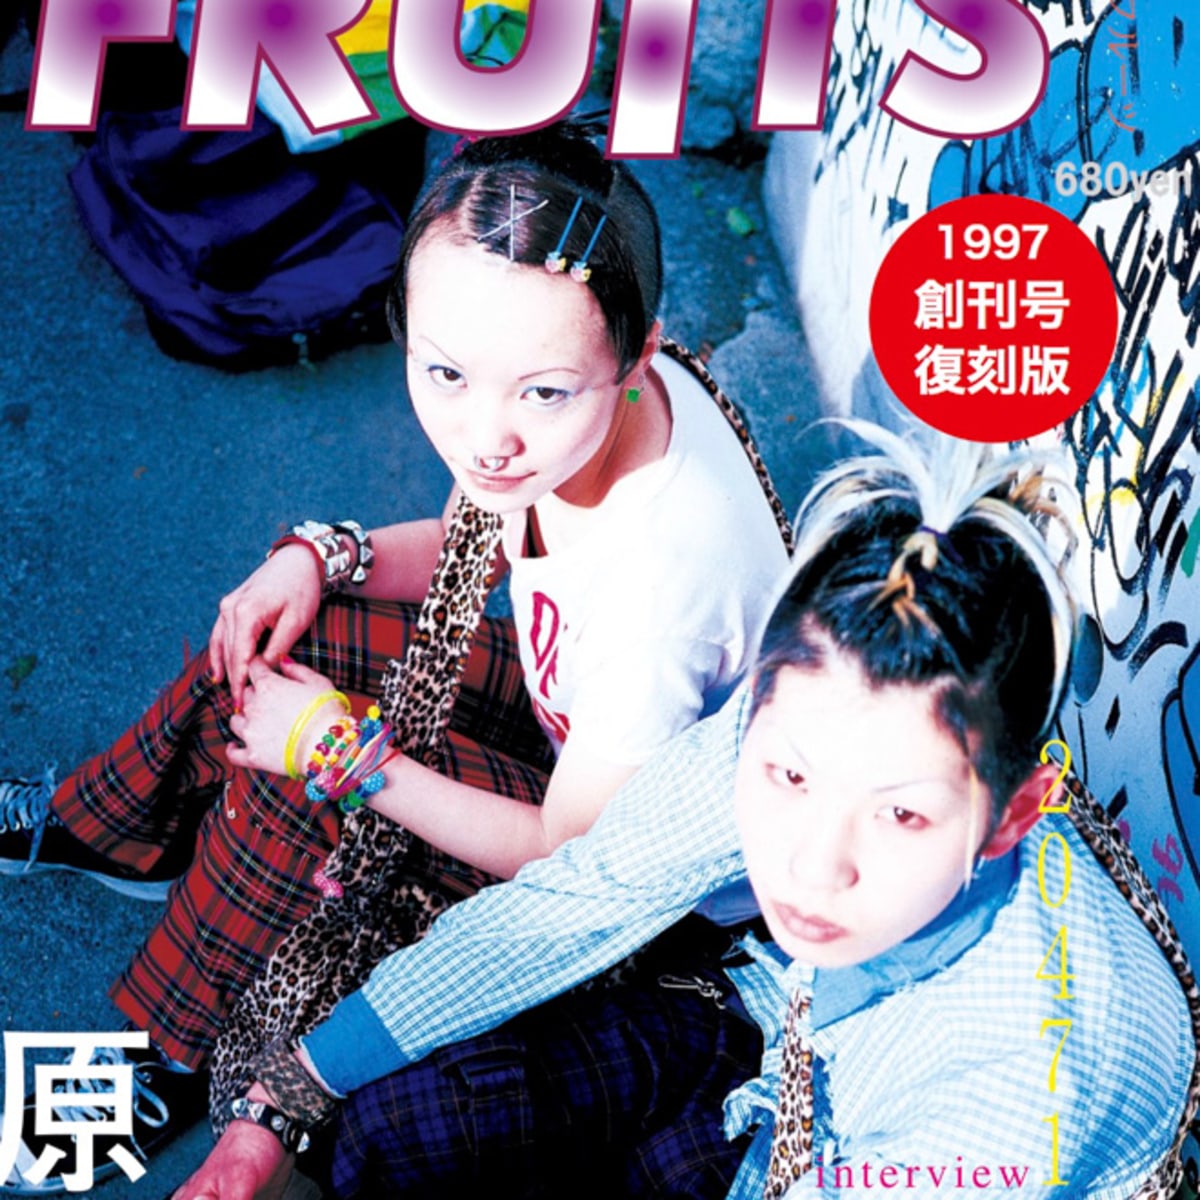 ファッション誌「FRUiTS」創刊号が復刻発売